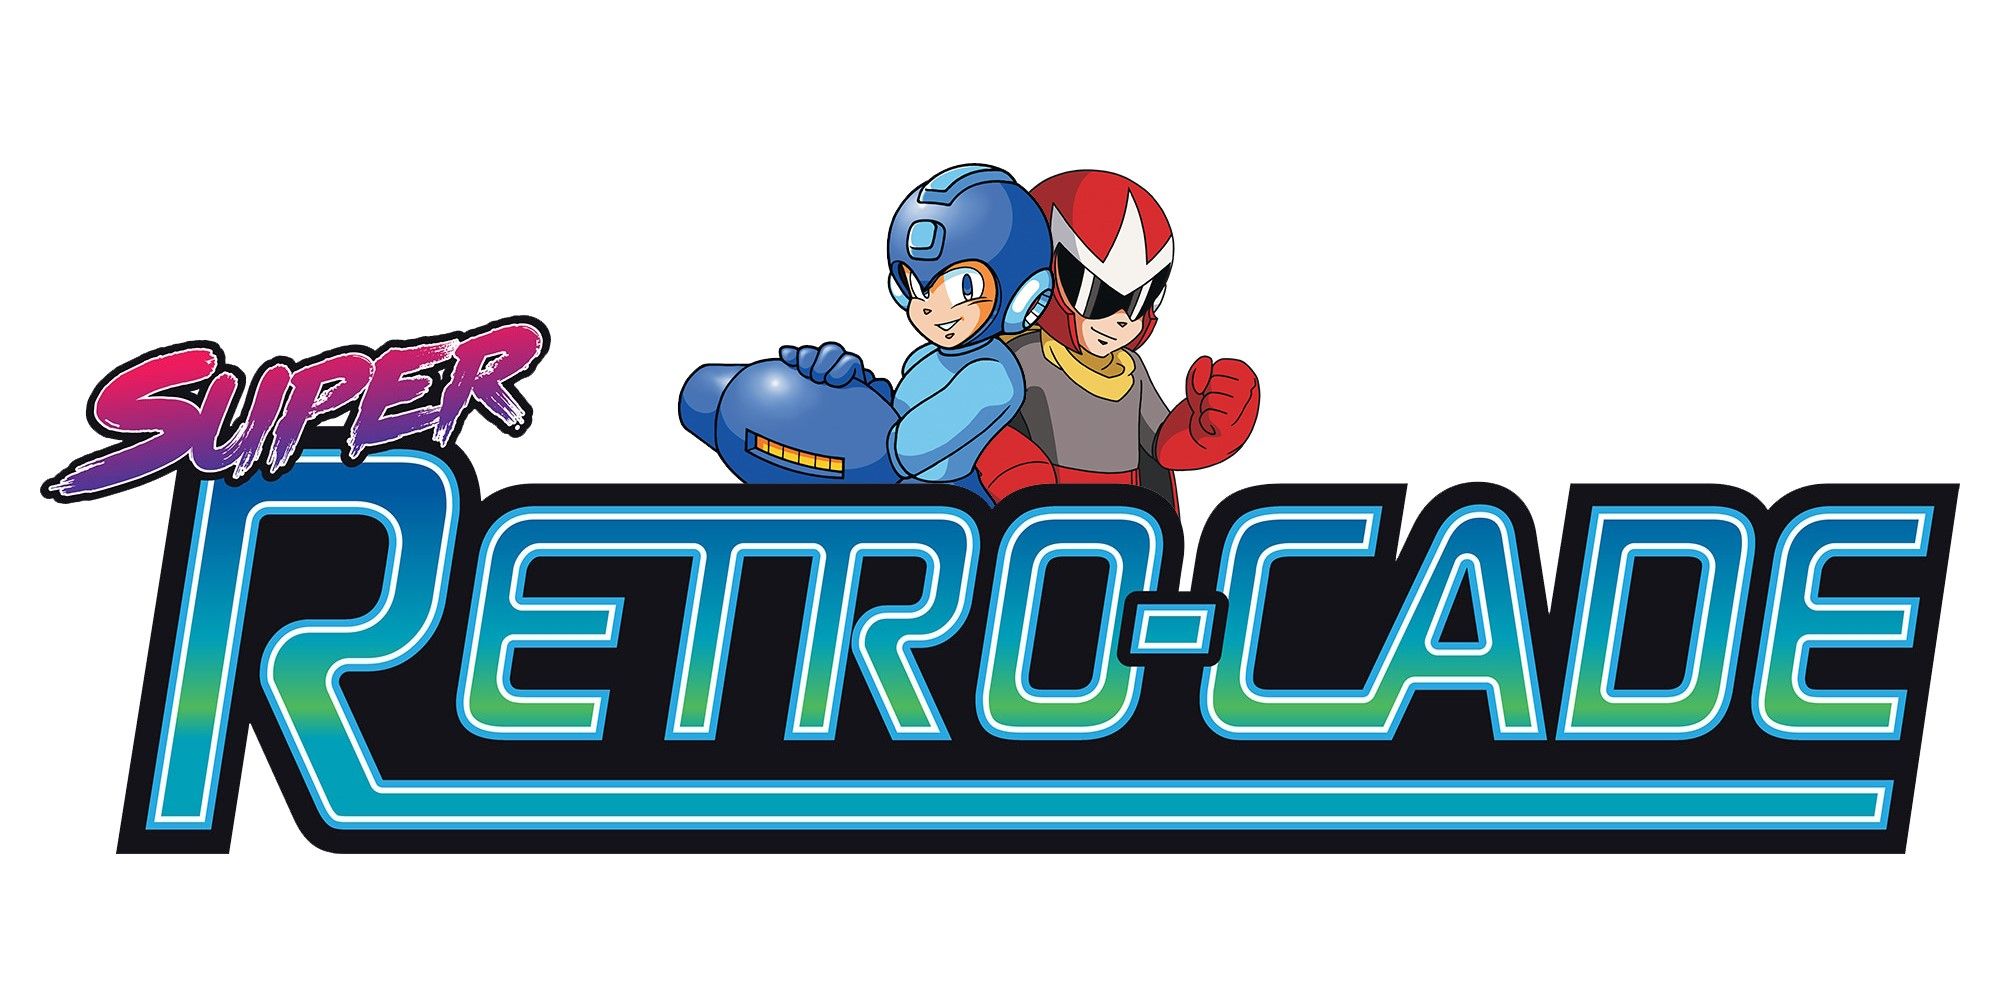 Super Retrocade logo with Rockman (Mega Man) and Proto Man.